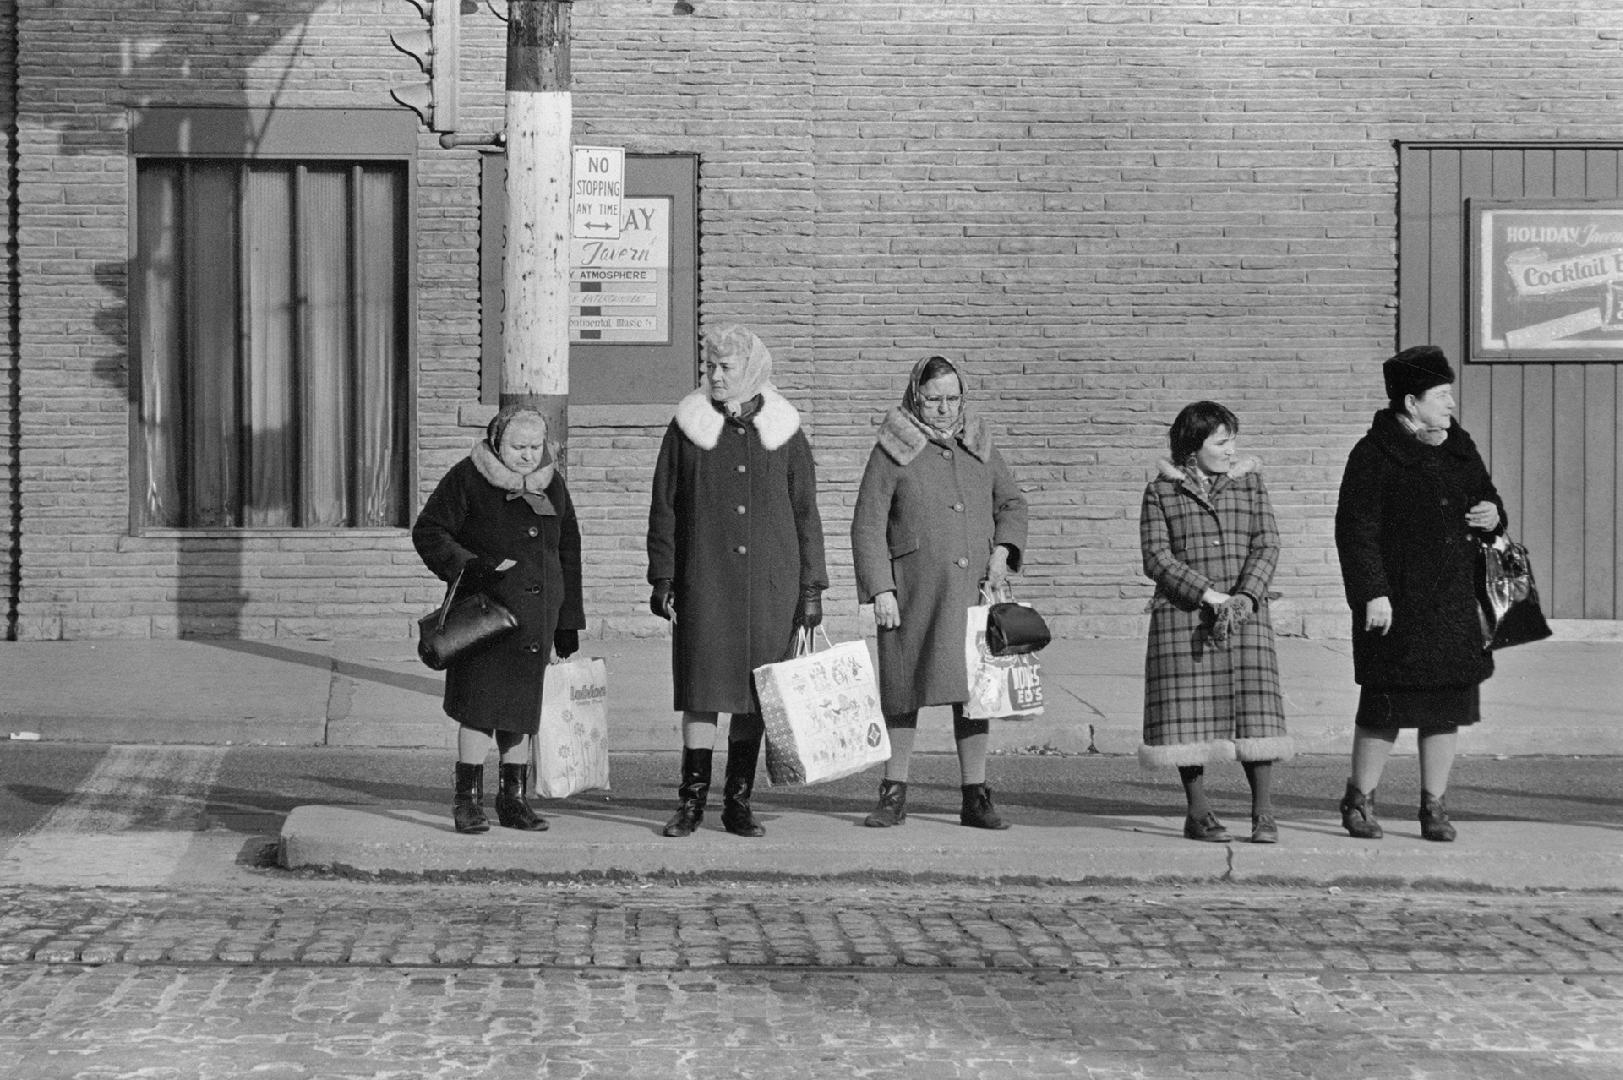 A photograph of five women standing on a sidewalk near a traffic light.